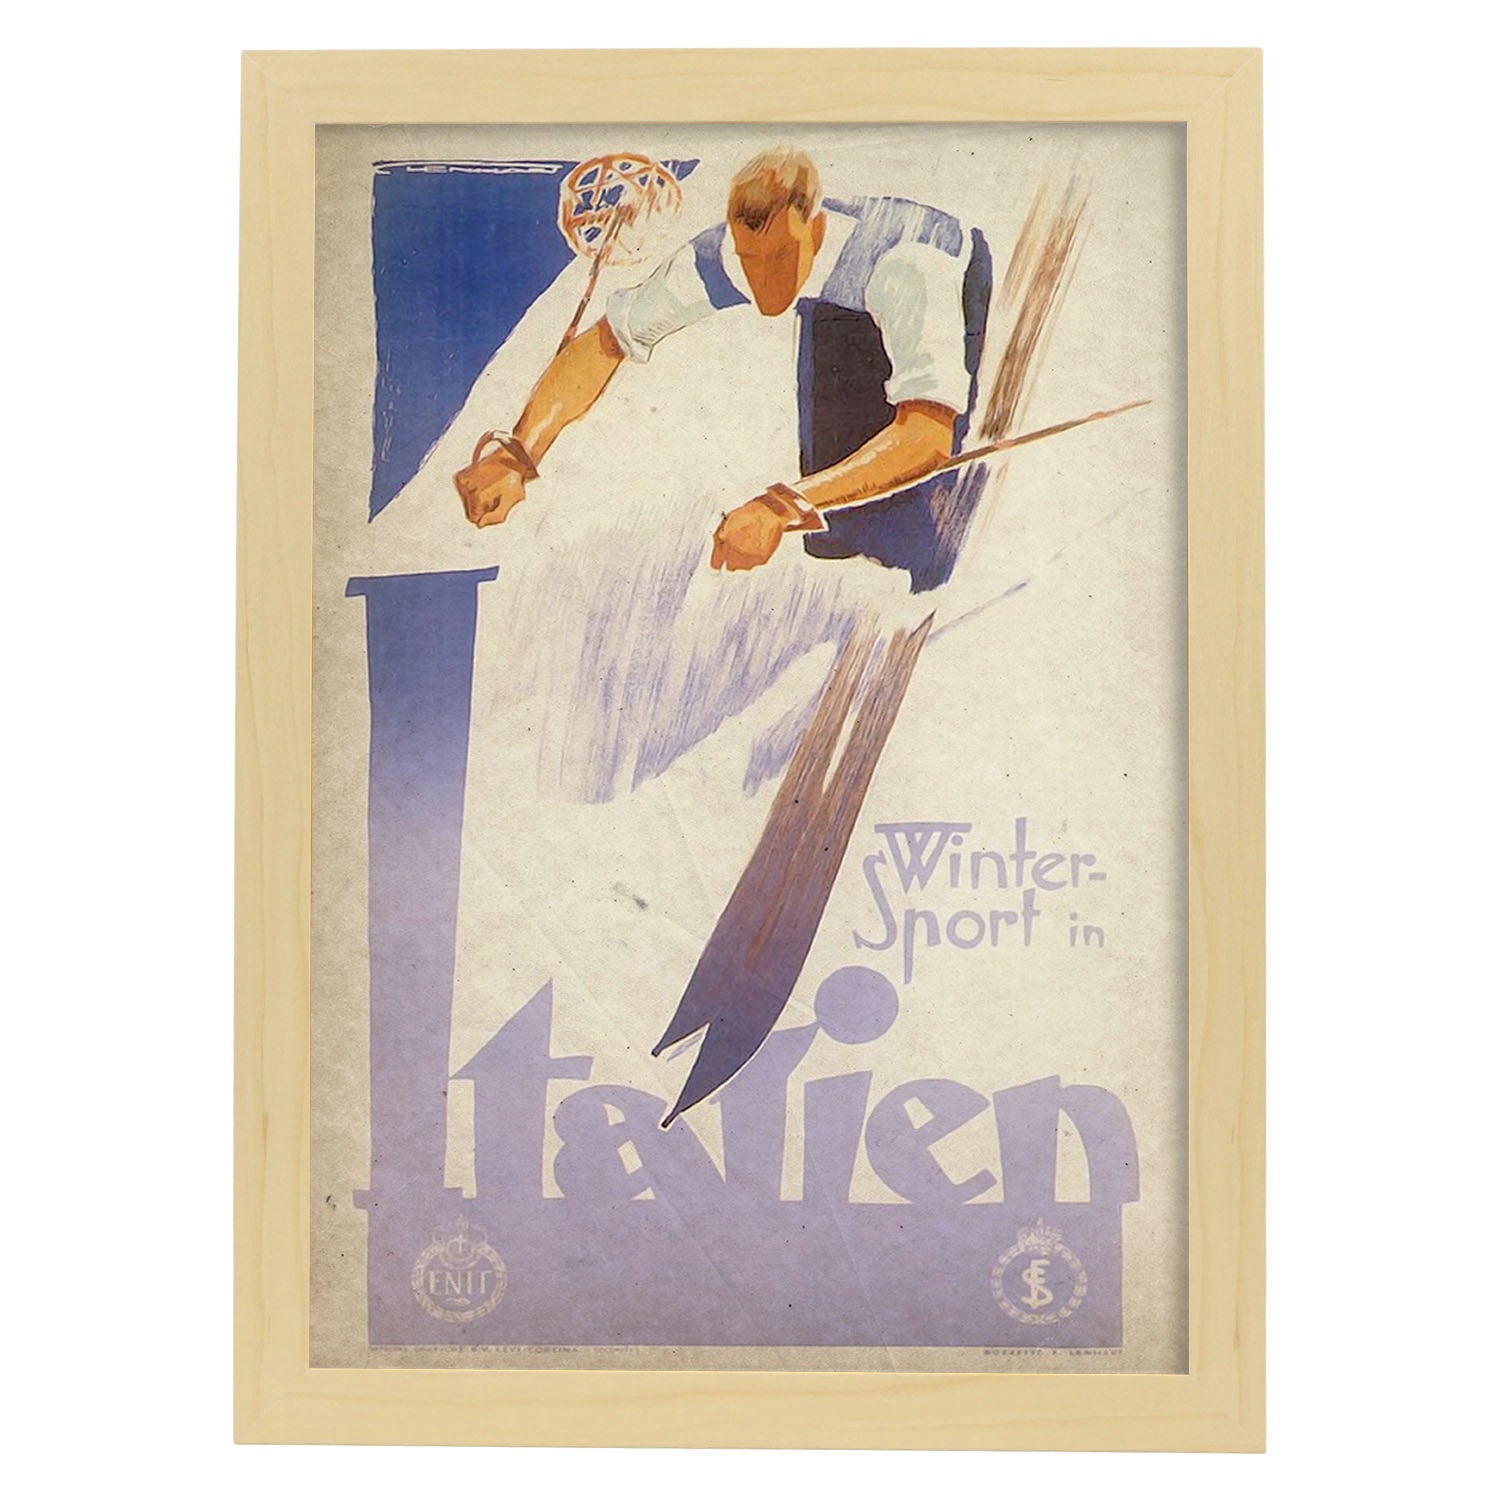 Poster vintage de Ski en Italia. con imágenes vintage y de publicidad antigua.-Artwork-Nacnic-A4-Marco Madera clara-Nacnic Estudio SL